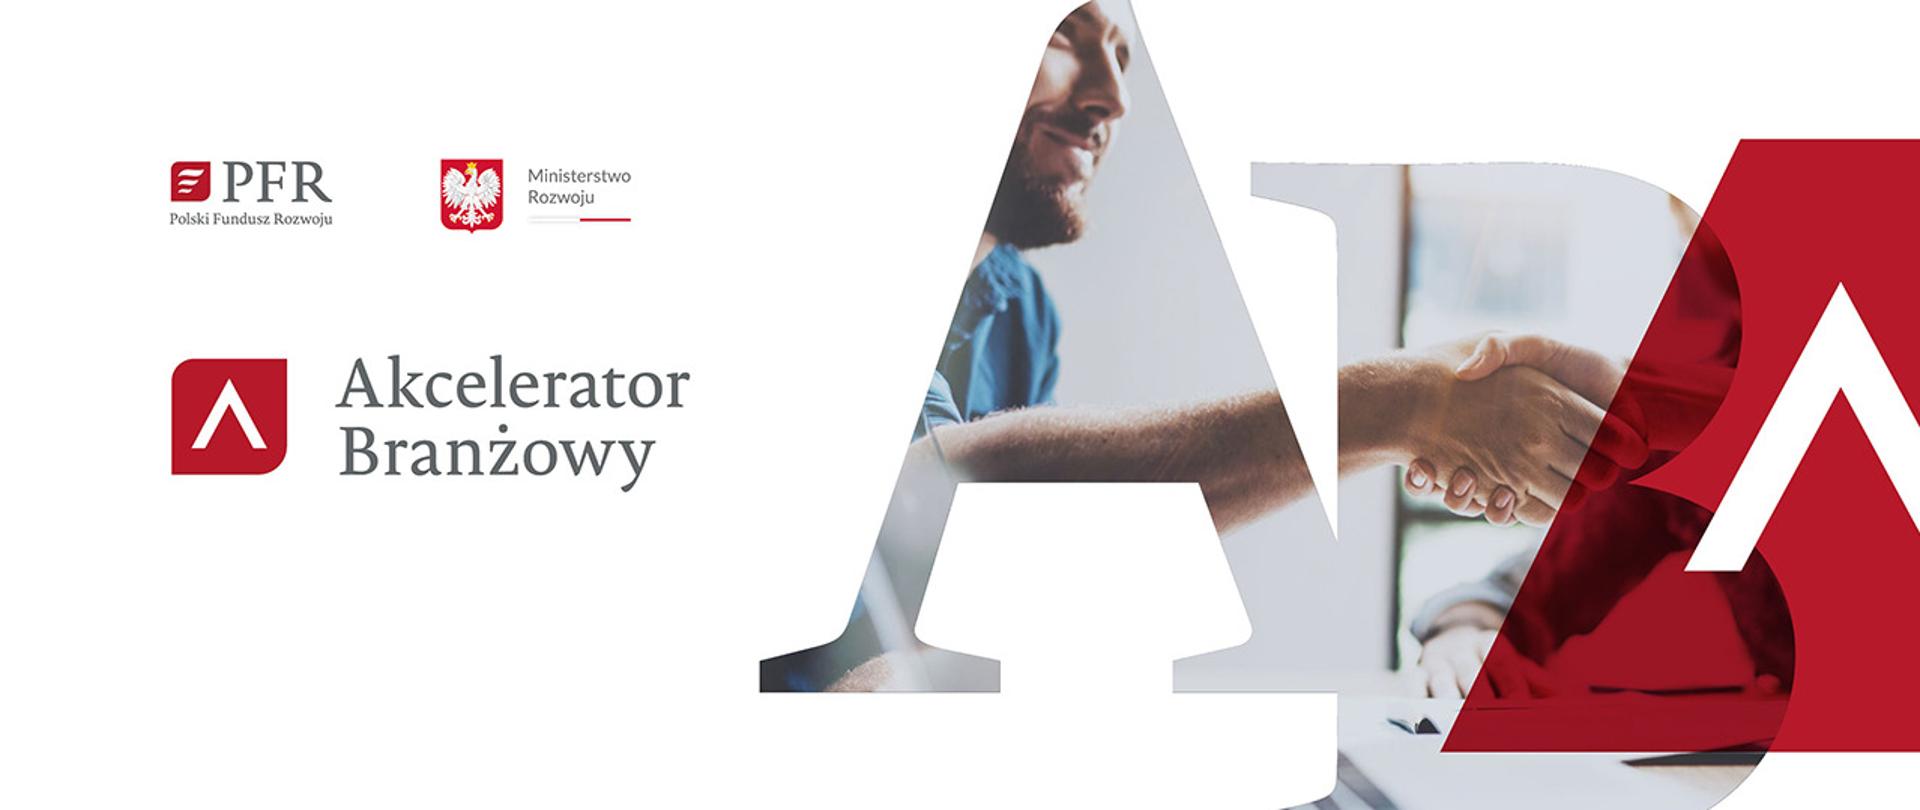 Informacja: Akcelerator Branżowy, logo Polskiego Funduszu Rozwoju i Ministerstwa Rozwoju, obok grafika z literami AB i uśmiechniętym mężczyzną.